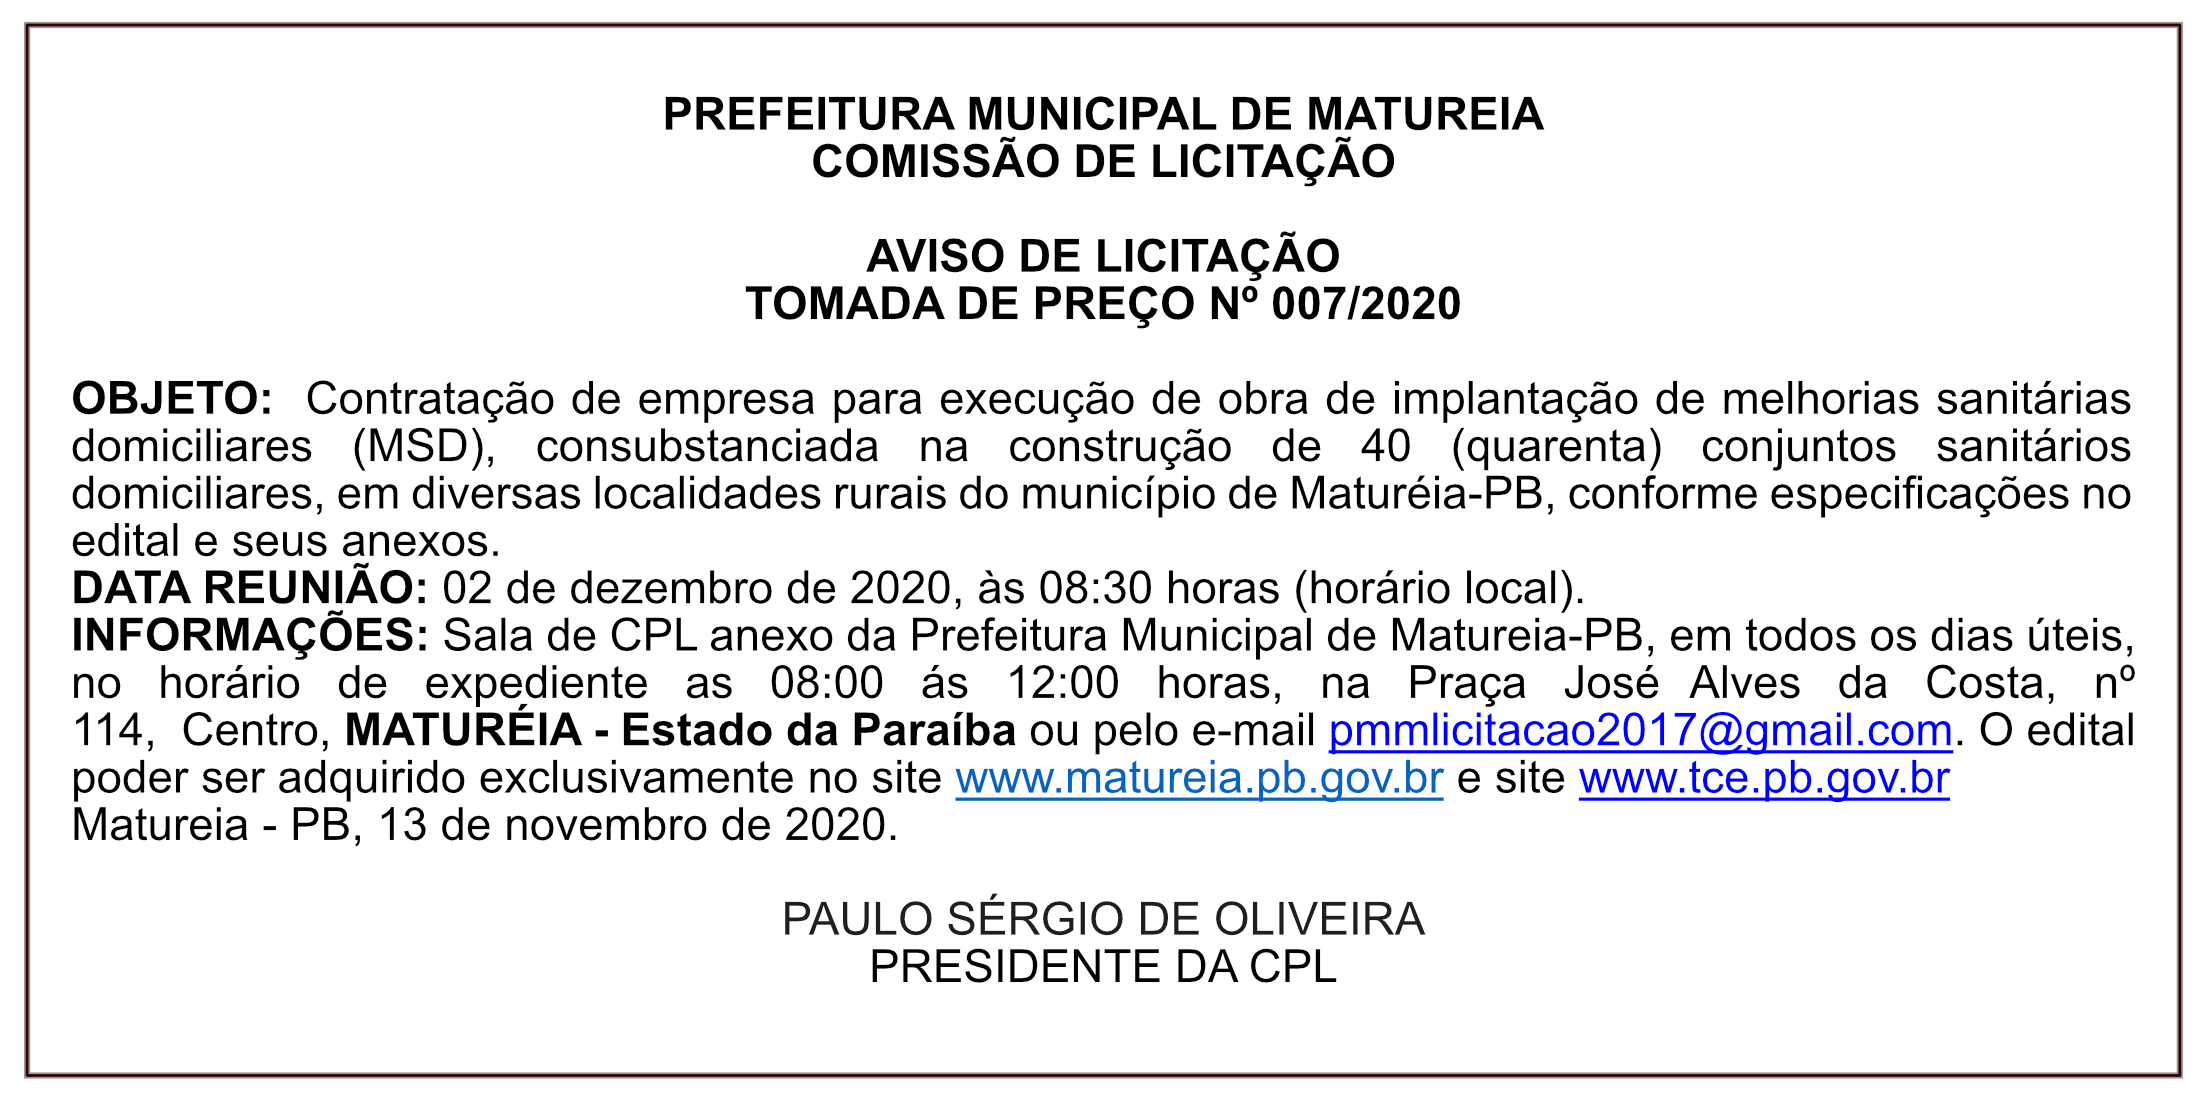 PREFEITURA MUNICIPAL DE MATUREIA – AVISO DE LICITAÇÃO – TOMADA DE PREÇO Nº 007/2020